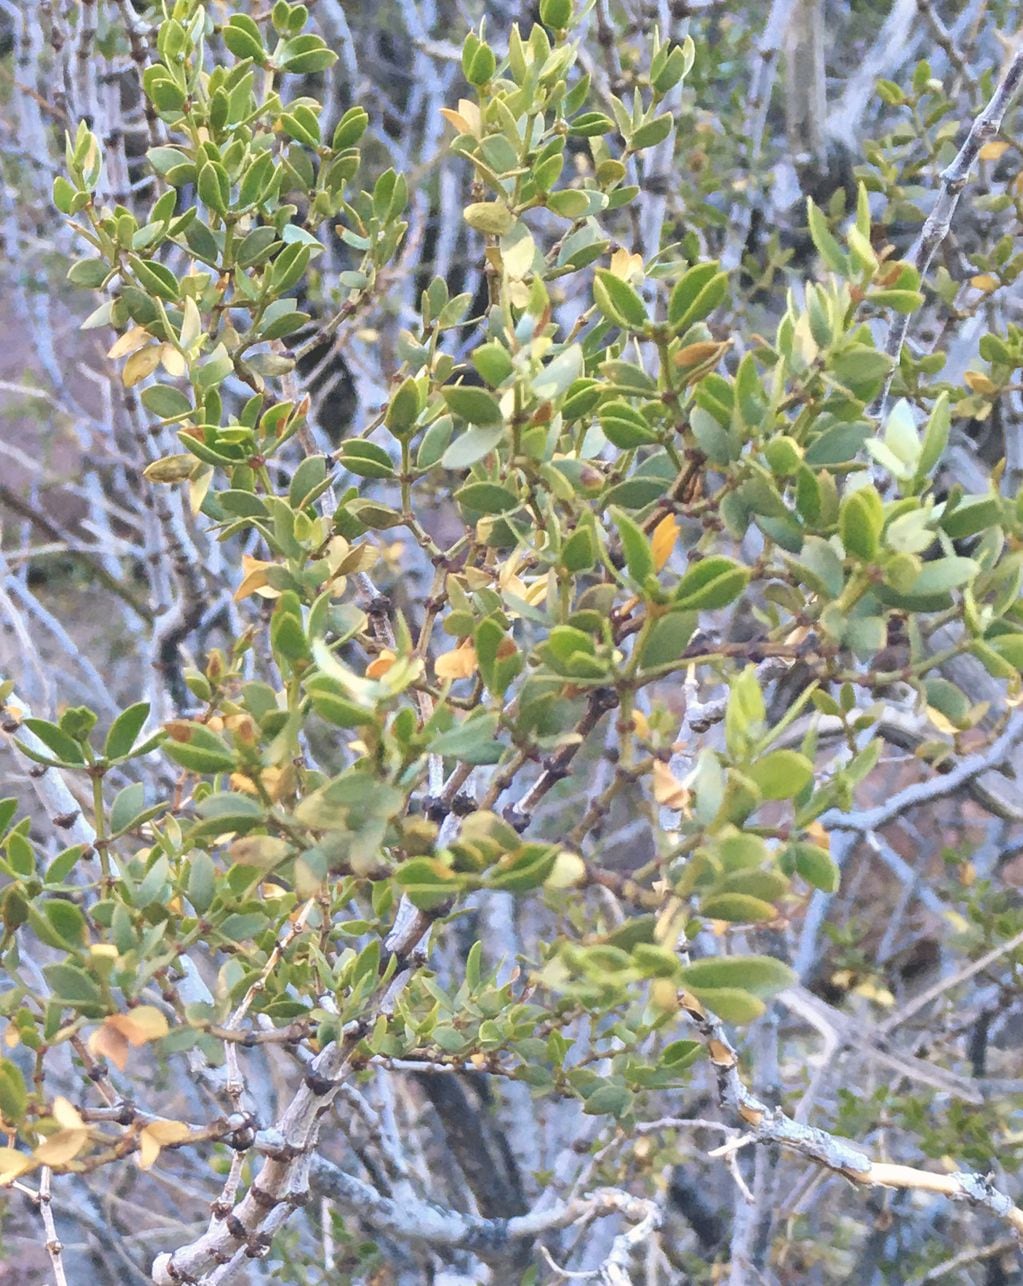 Jarilla hembra (Larrea divaricata) con hojas plegadas ante condiciones de frío extremo en alta Montaña (Mendoza). Foto: Gentileza